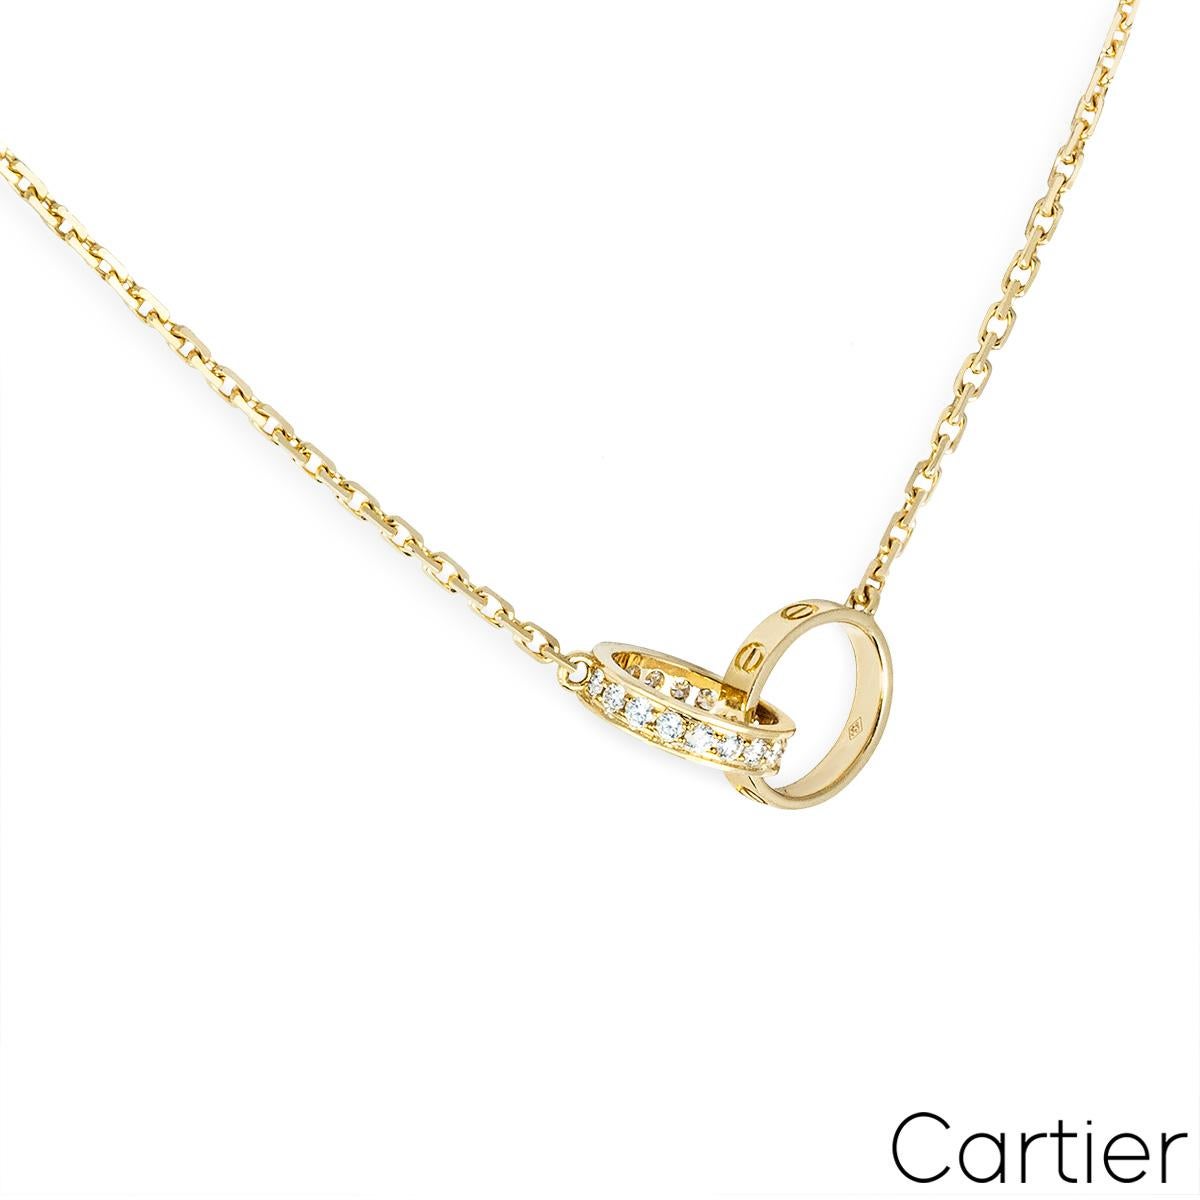 Ein zartes Collier aus 18 Karat Gelbgold aus der Collection'S Cartier Love. In der Mitte der Halskette befinden sich zwei ineinander greifende kreisförmige Motive, von denen eines mit dem ikonischen Schraubenmotiv und das andere mit 18 runden